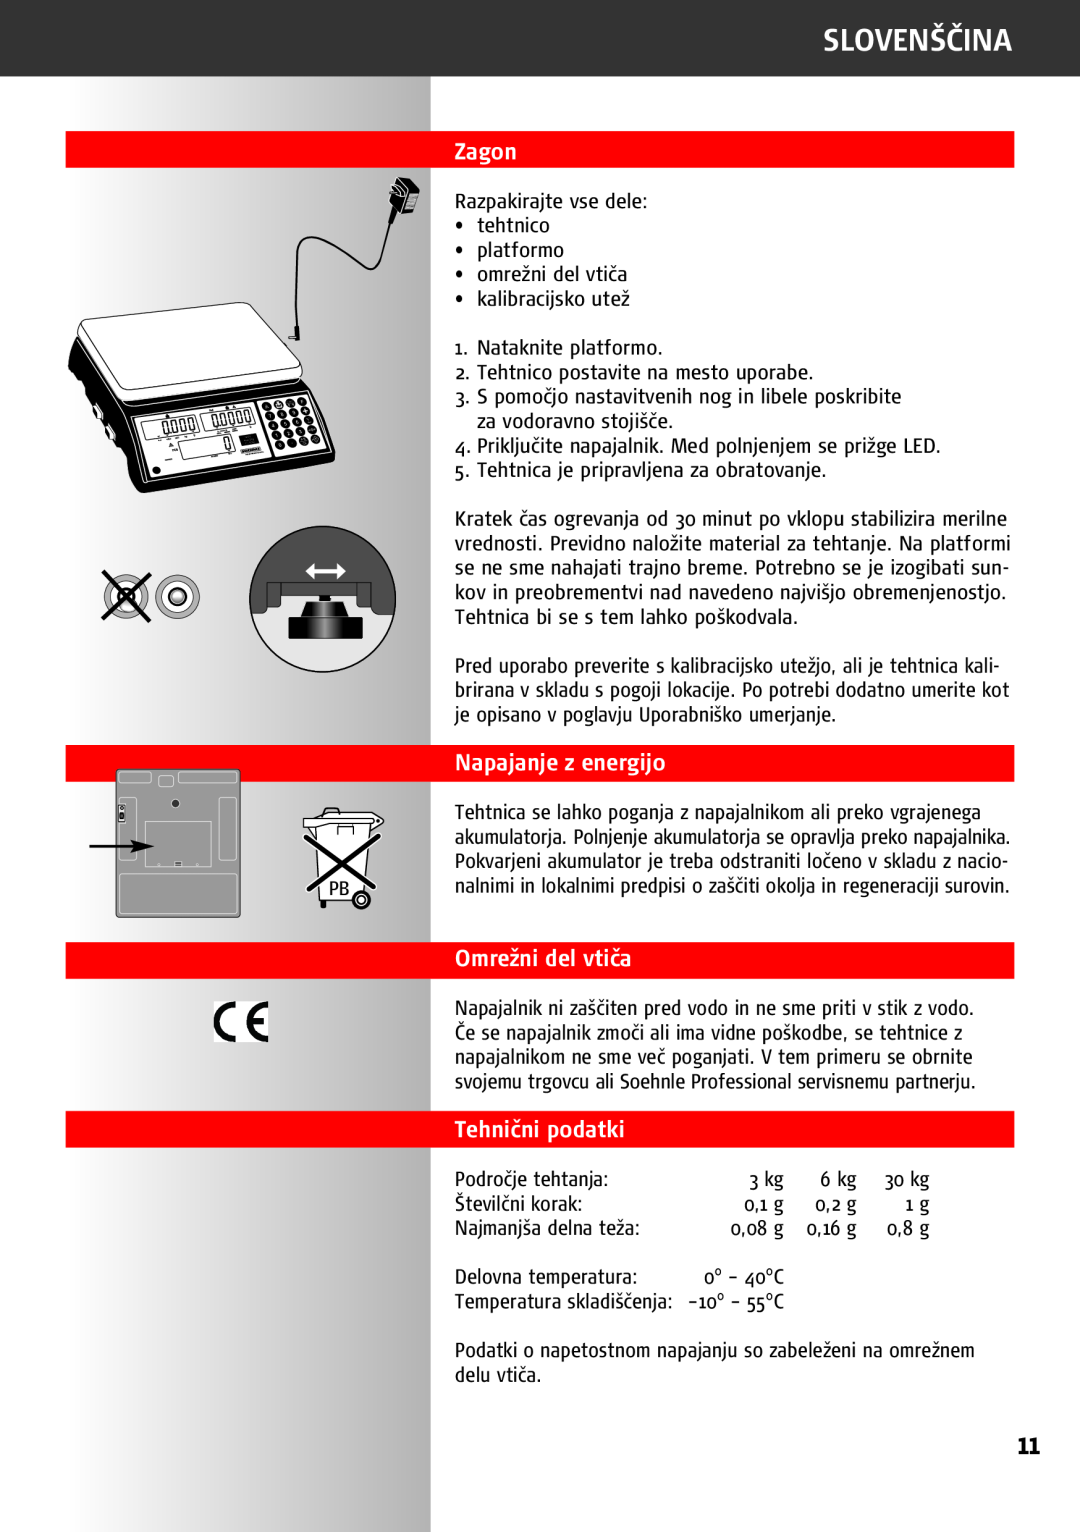 Soehnle 9220 manual Zagon, Napajanje z energijo, Omrežni del vtiča, Tehnični podatki, Slovenščina 